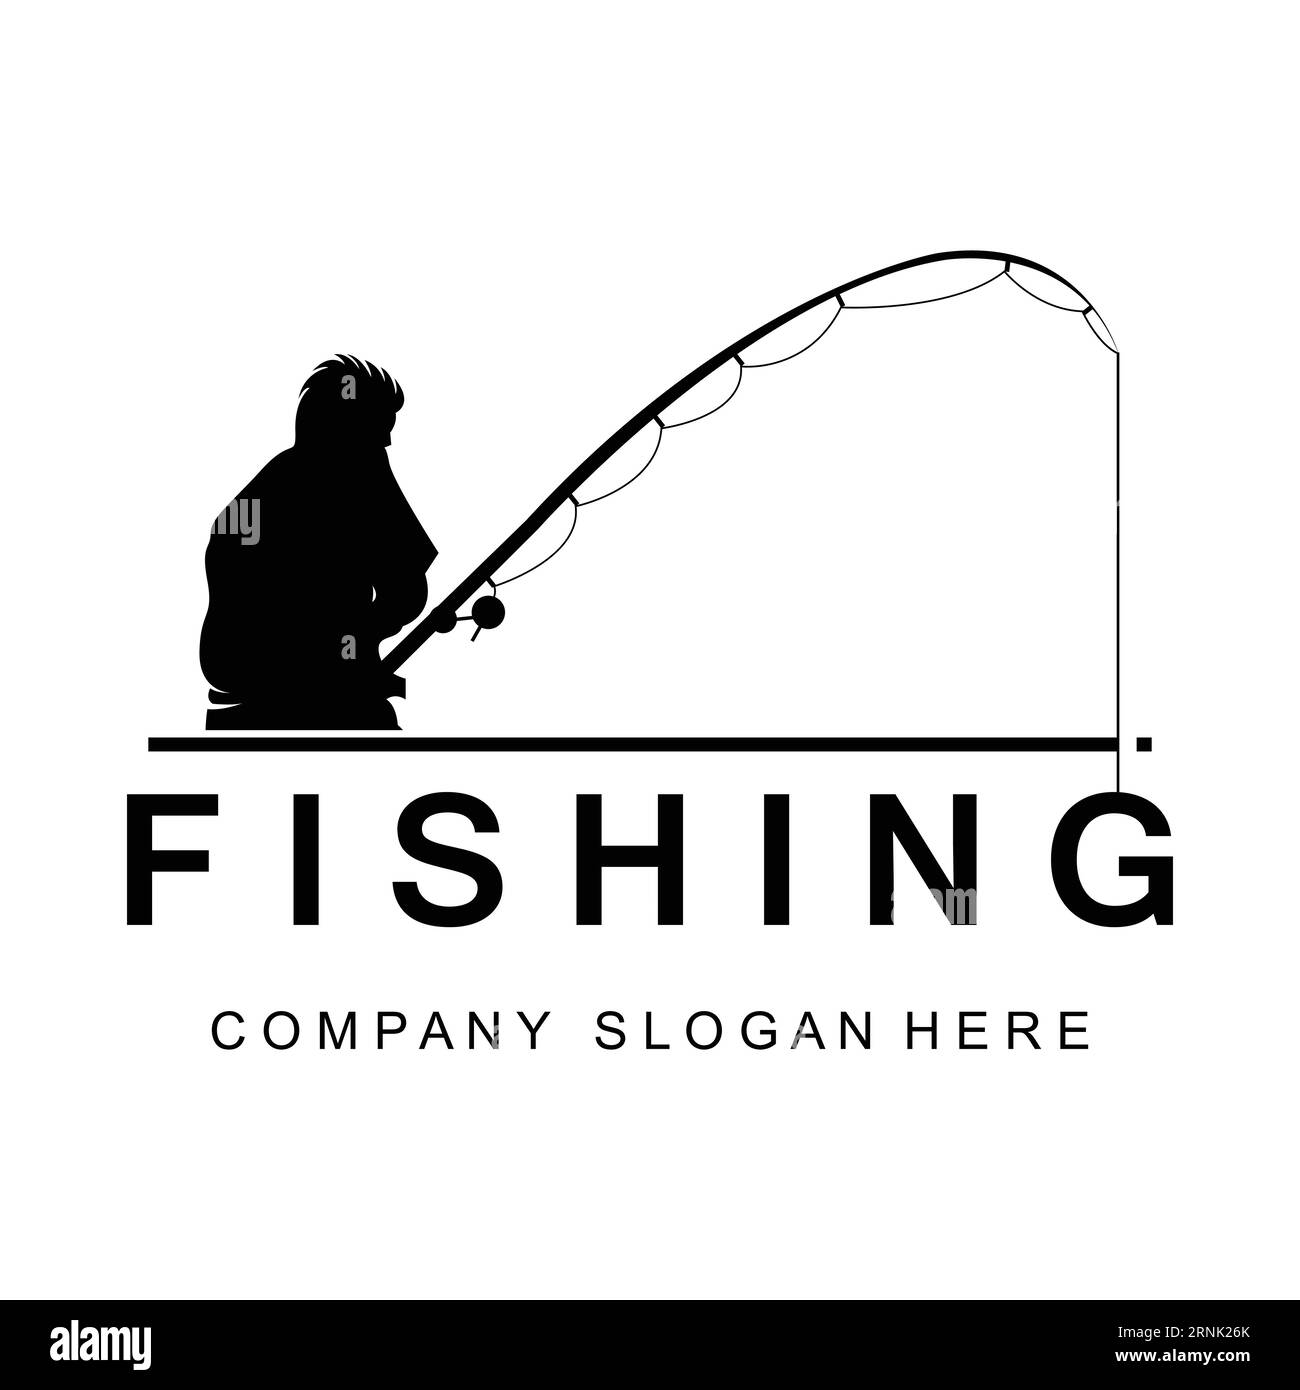 Fishing Logo Design, Fish Hunting Vector Illustration Stock Vector